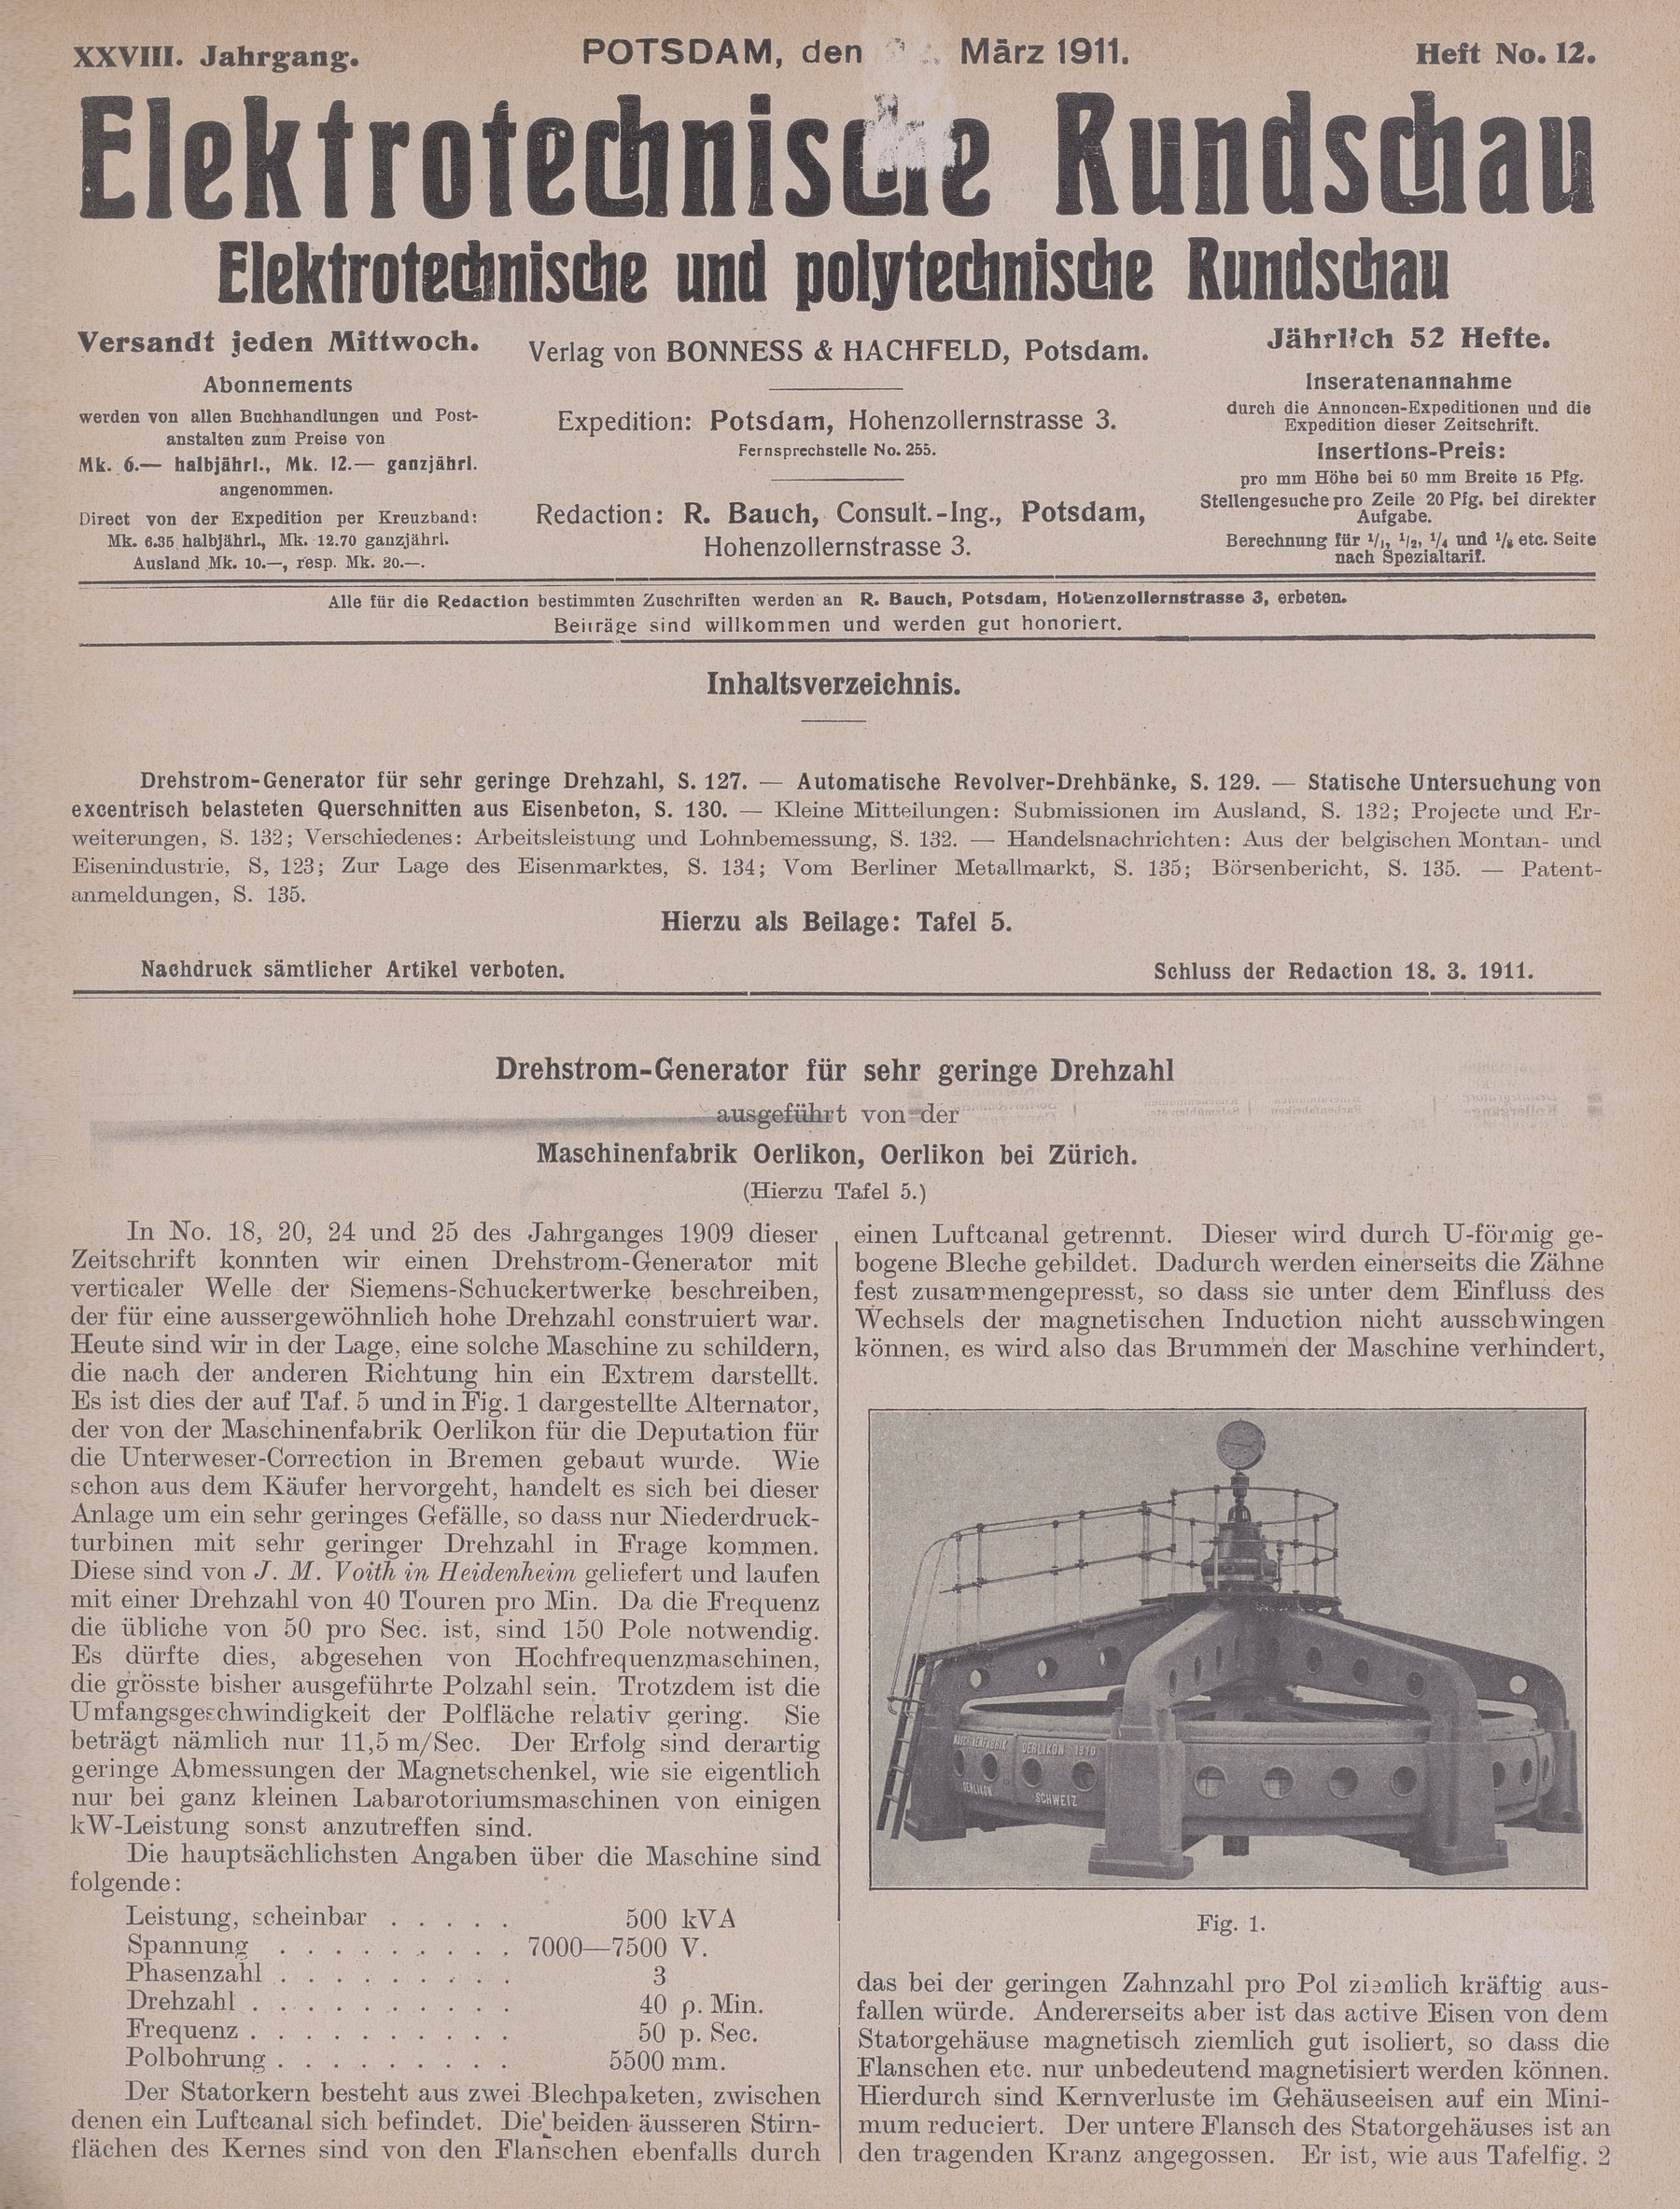 Elektrotechnische Rundschau : Elektrotechnische und polytechnische Rundschau, XXVIII. Jahrgang, Heft No. 12